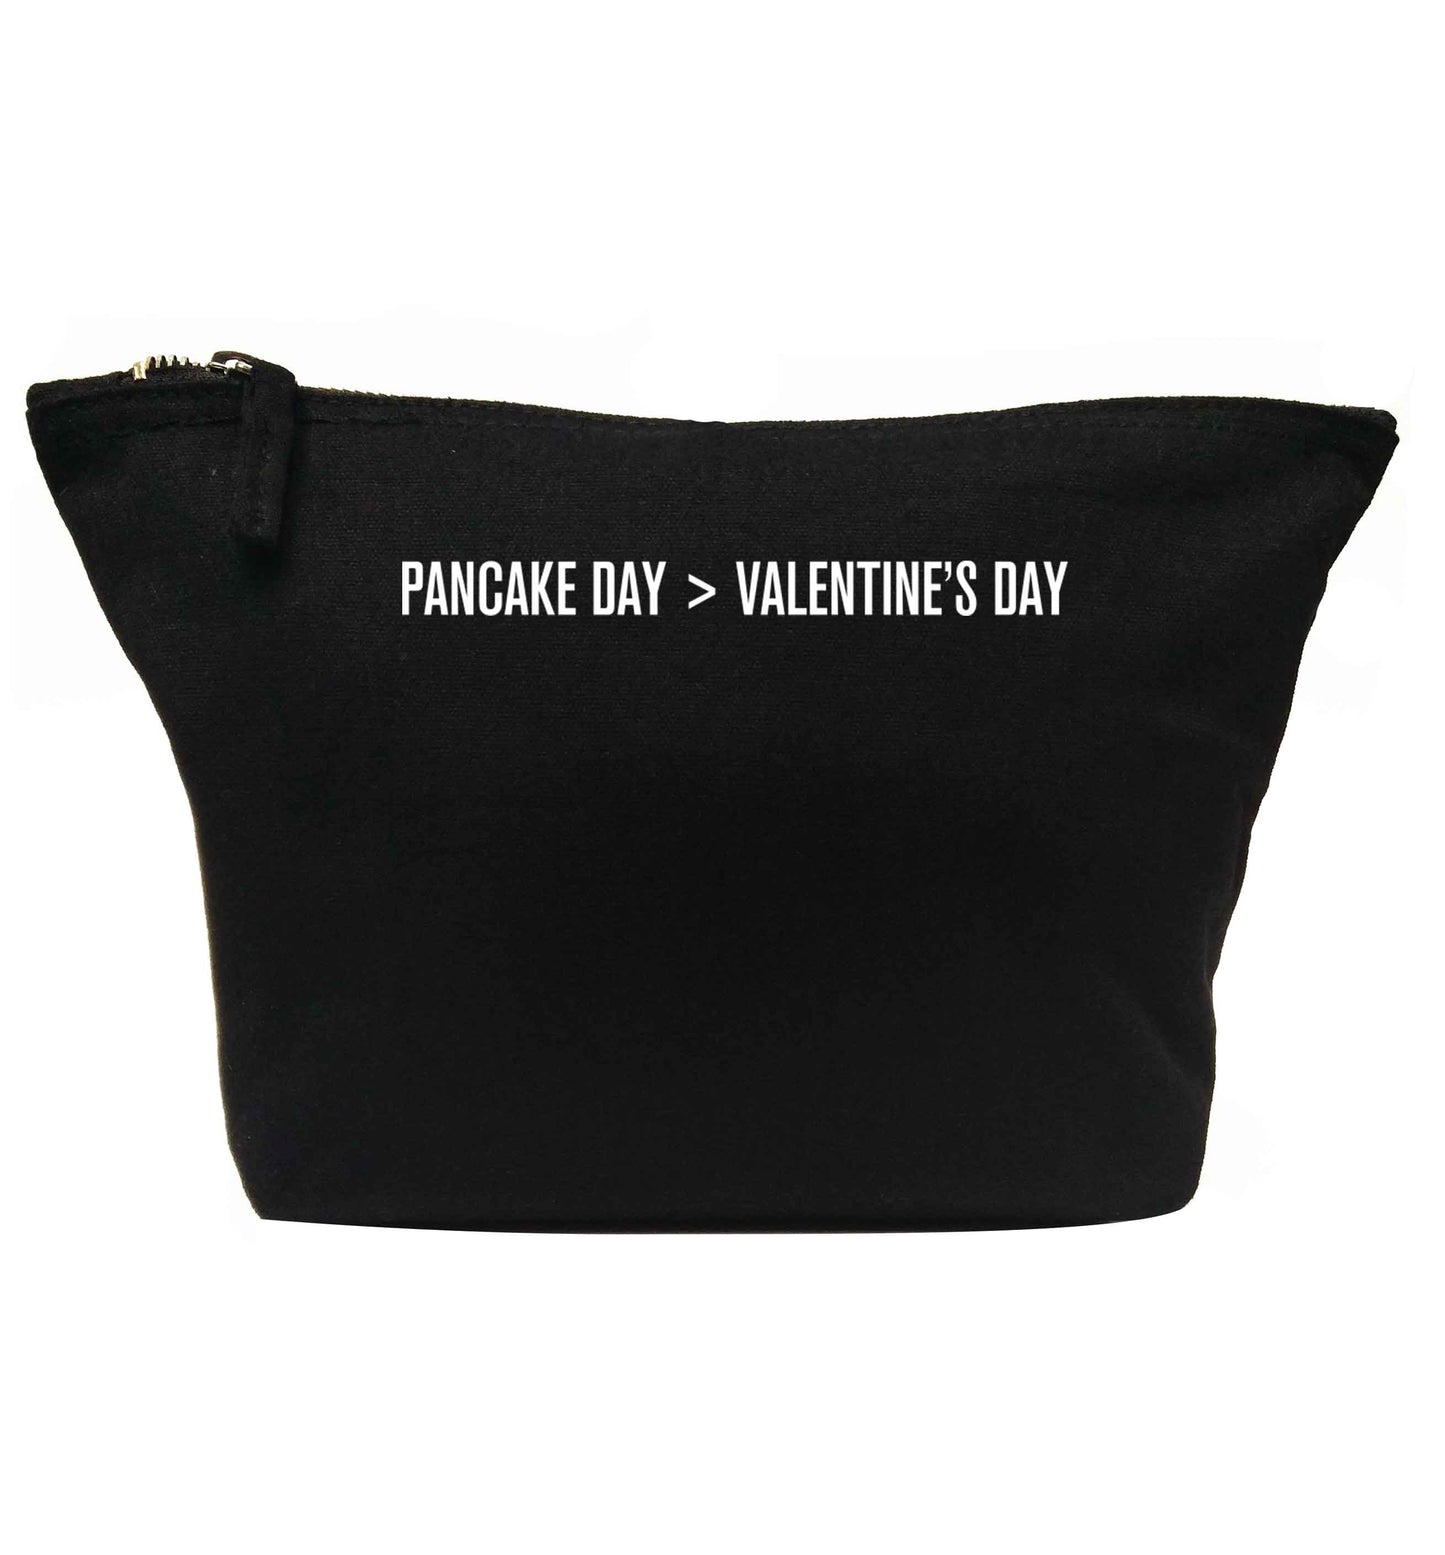 Pancake day > valentines day | Makeup / wash bag